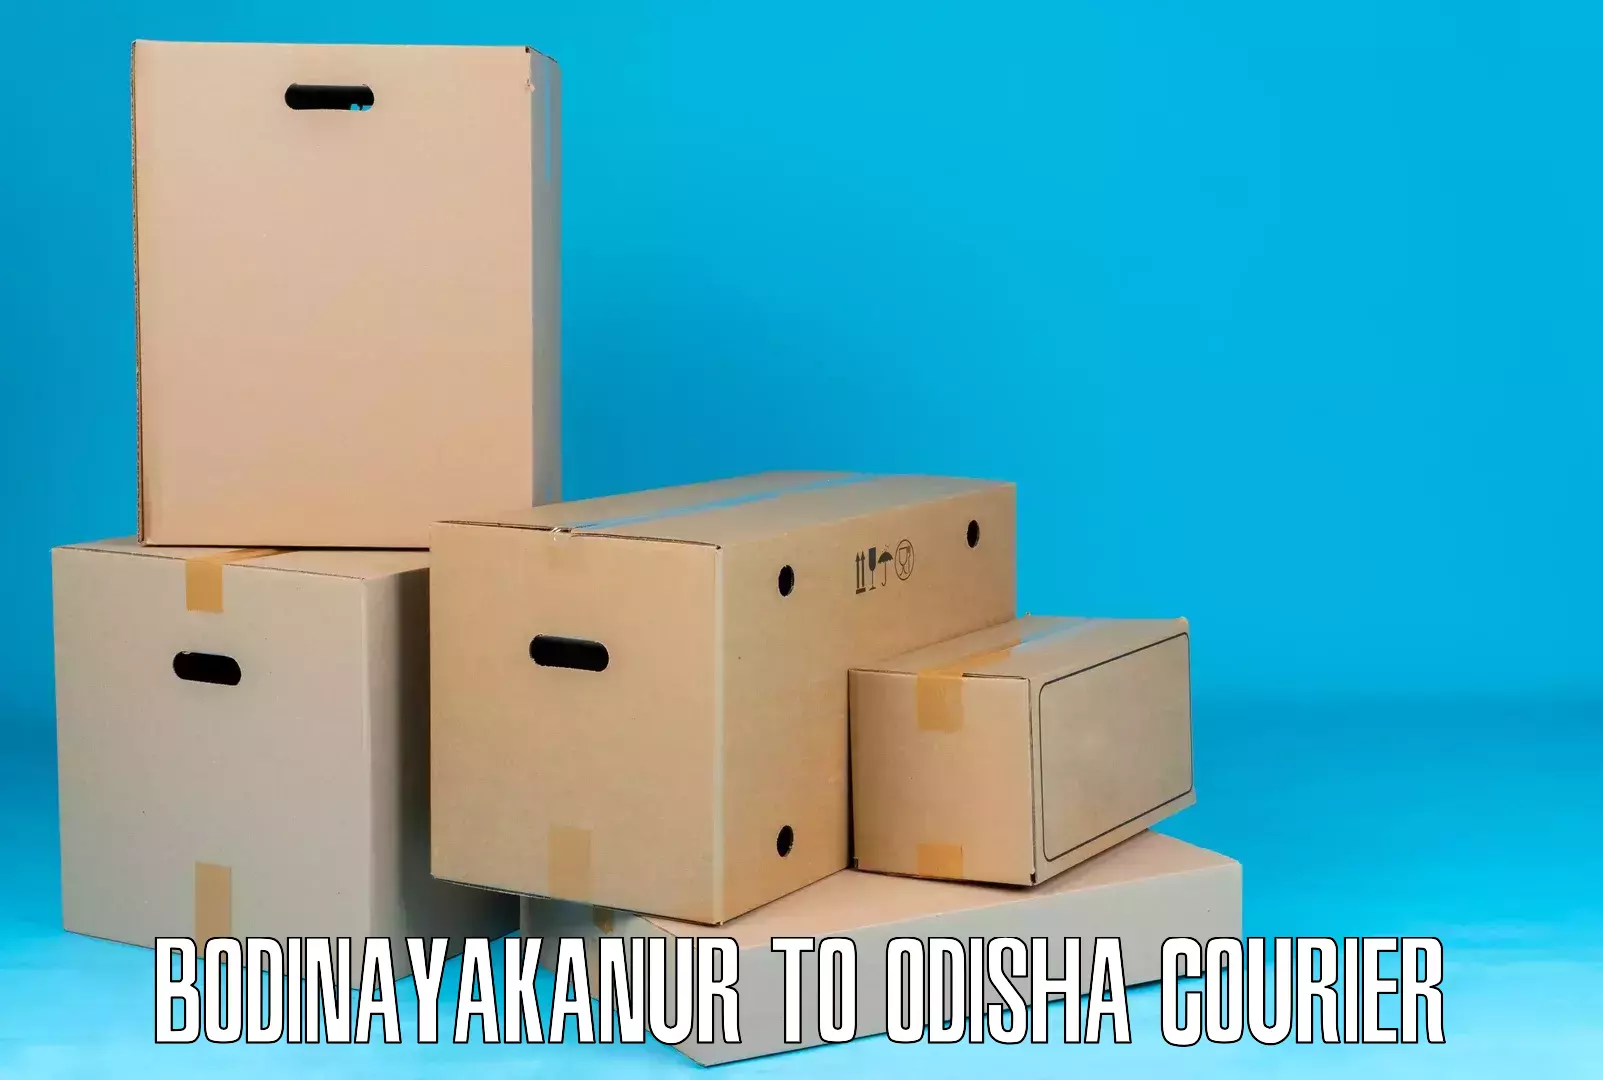 Dynamic courier services Bodinayakanur to Muniguda